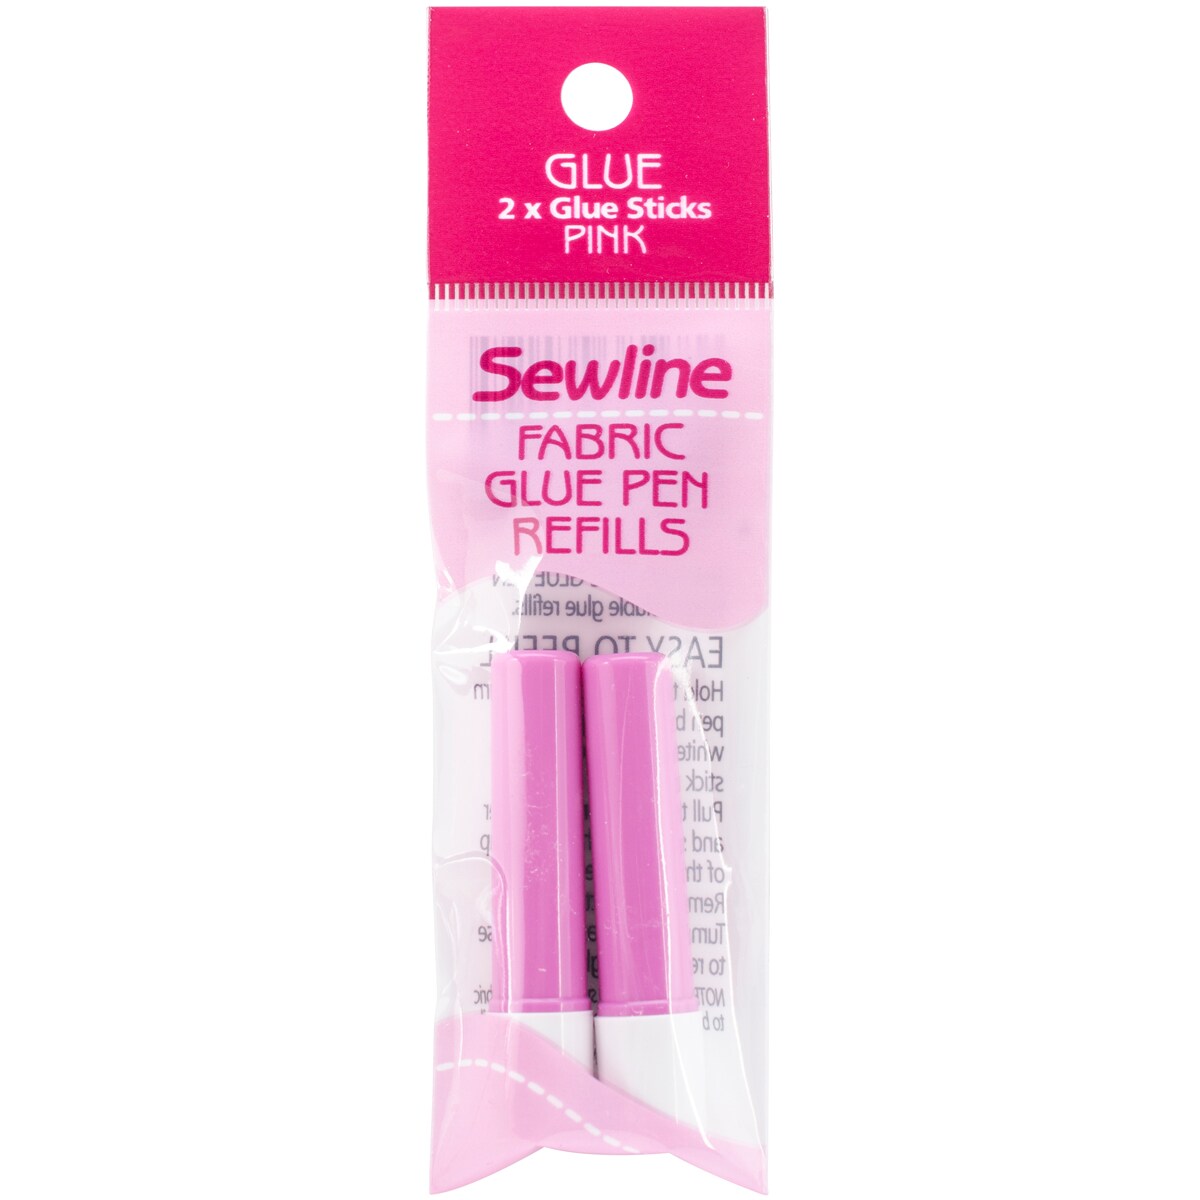 SEWLINE glue pen water soluble w refill